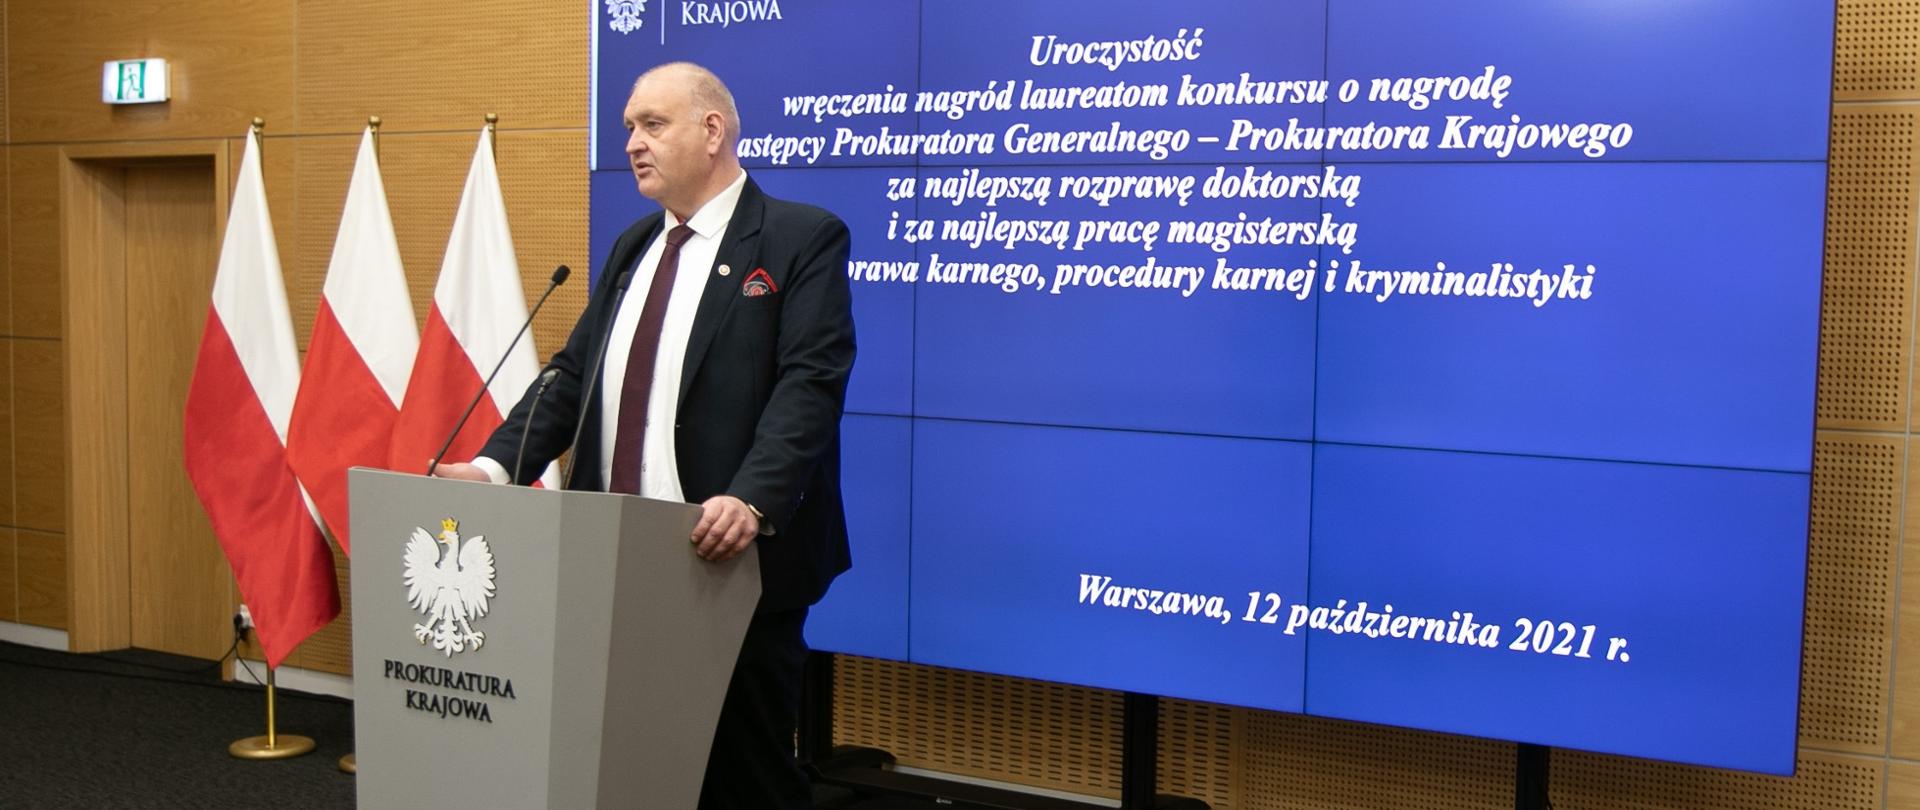 I Zastępca Prokuratora Generalnego - Prokurator Krajowy Bogdan Święczkowski podczas przemówienia